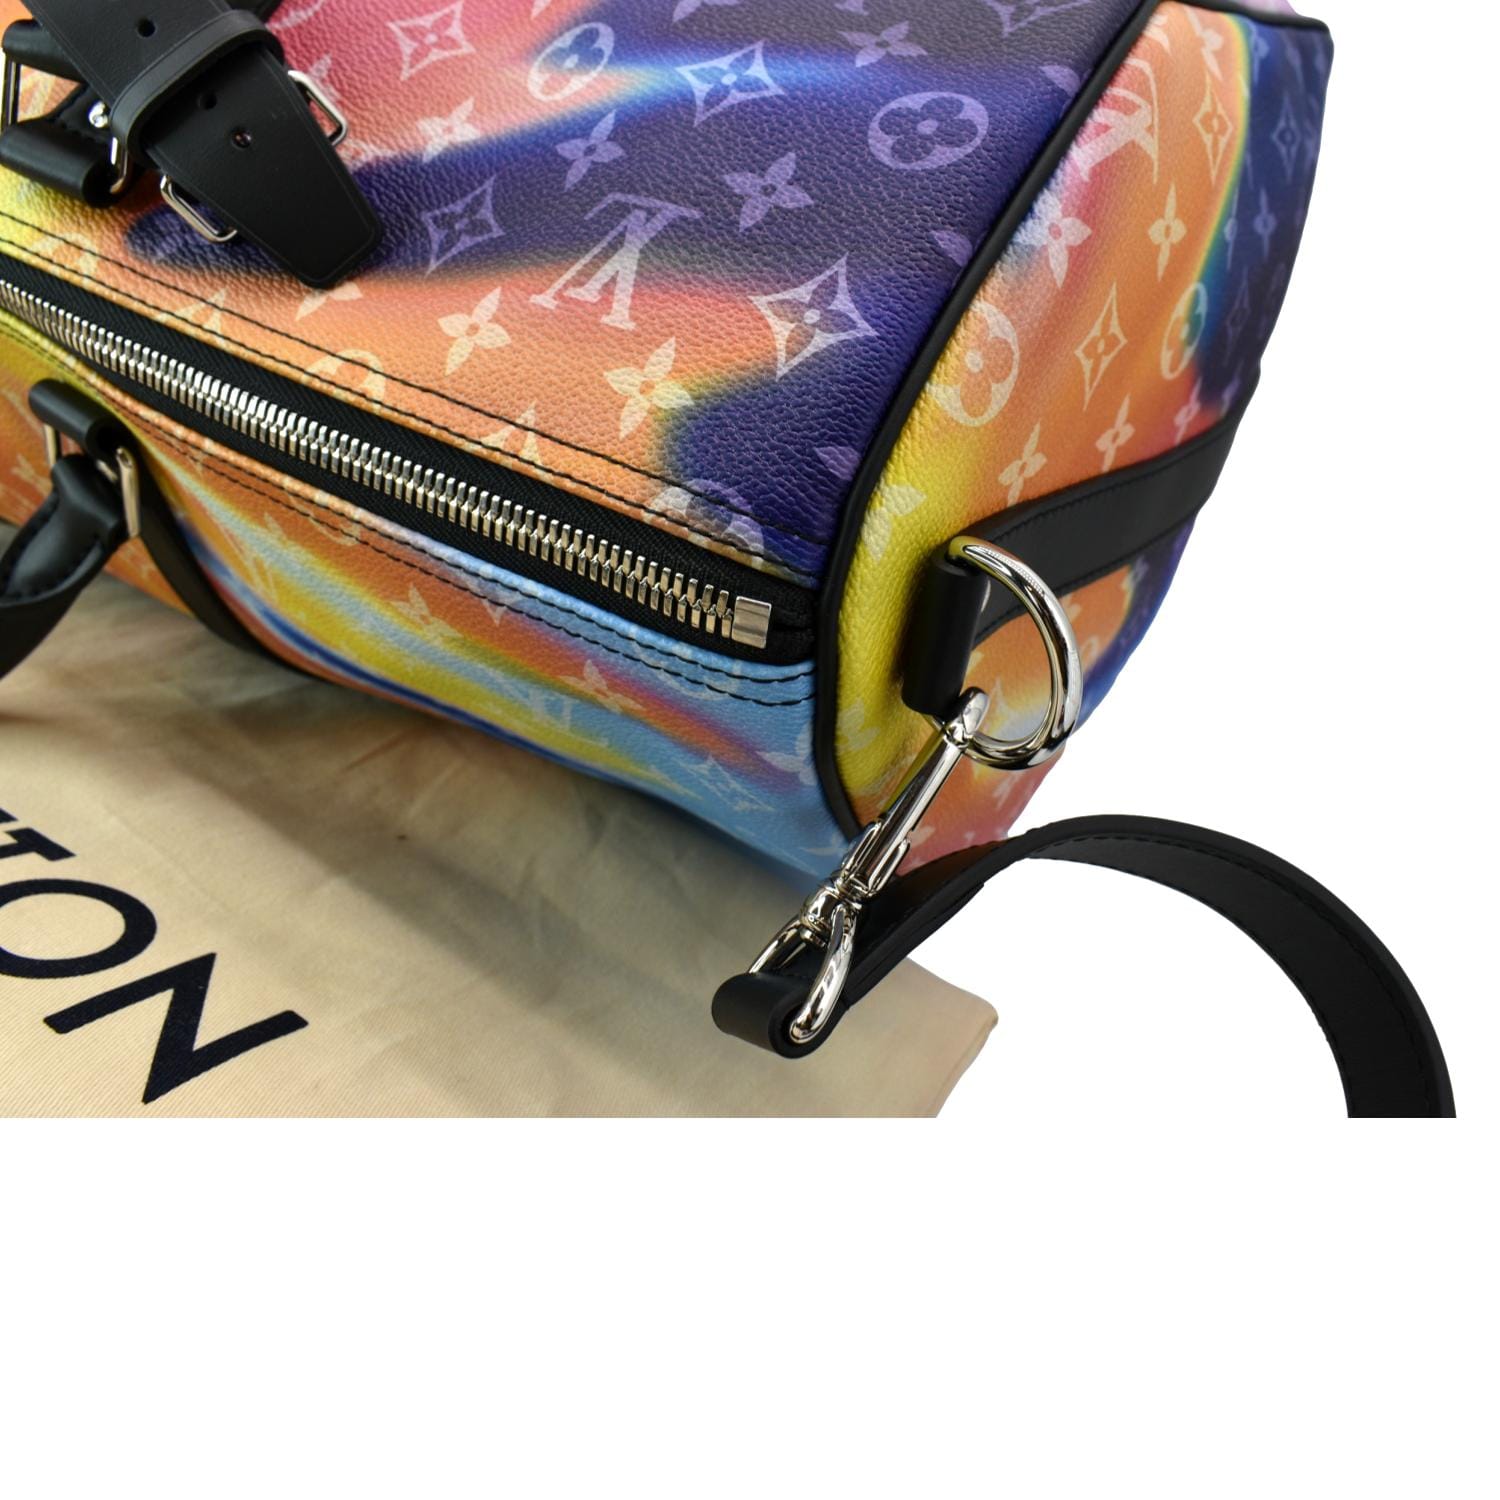 M80953 Louis Vuitton Monogram Sunset Keepall XS Bag